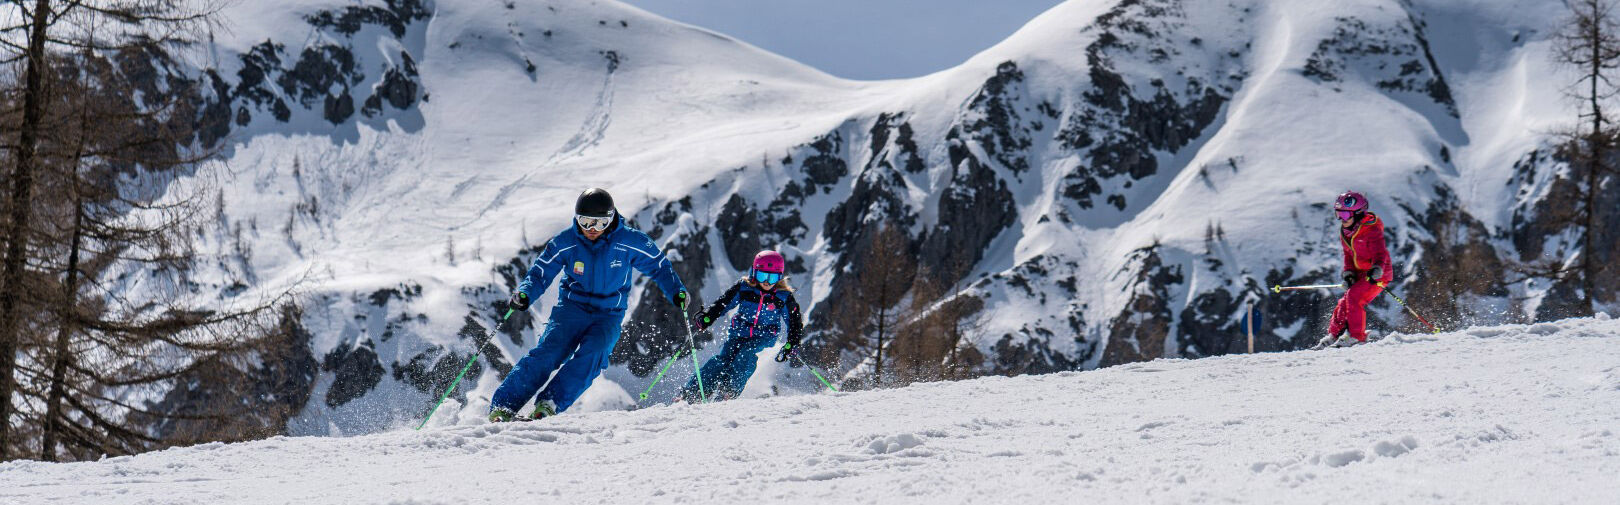 Skischule Flachau - Ski Gruppenkurse für Kinder - Anfänger bis Fortgeschrittene